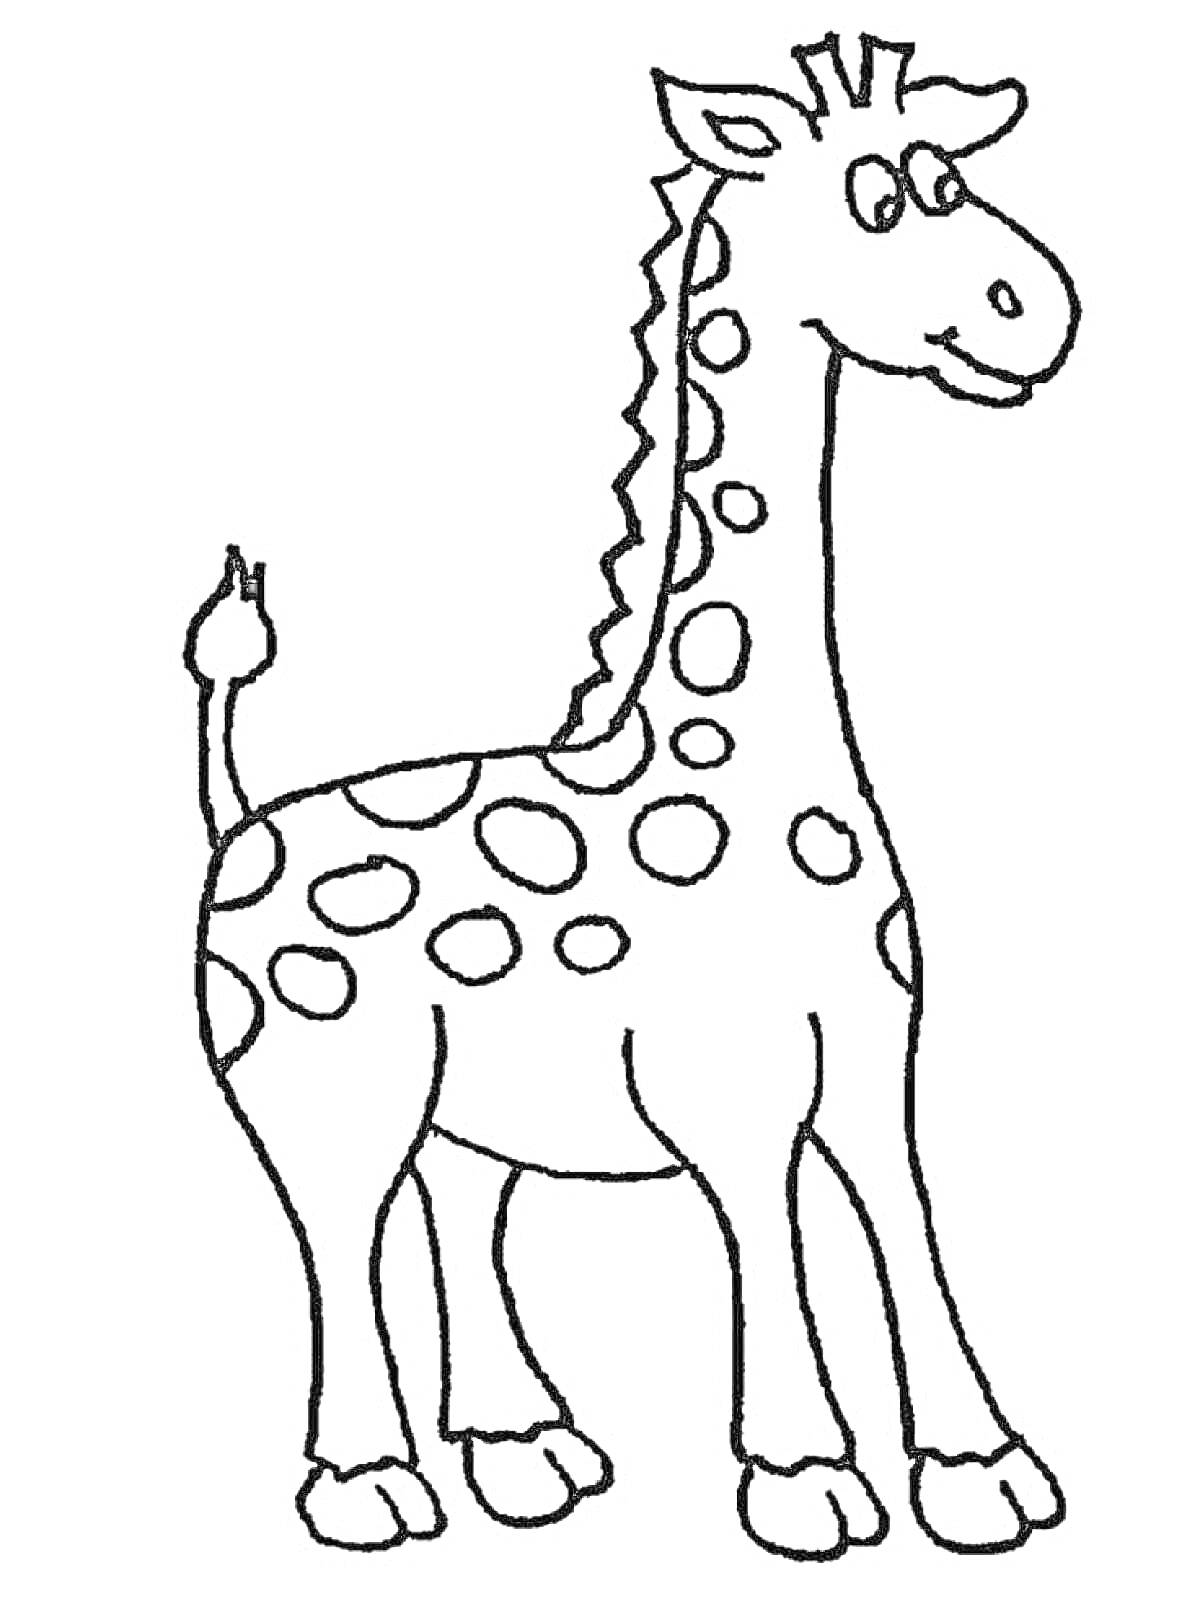 Раскраска Жираф с пятнами, стоящий на четырех ногах, детская раскраска